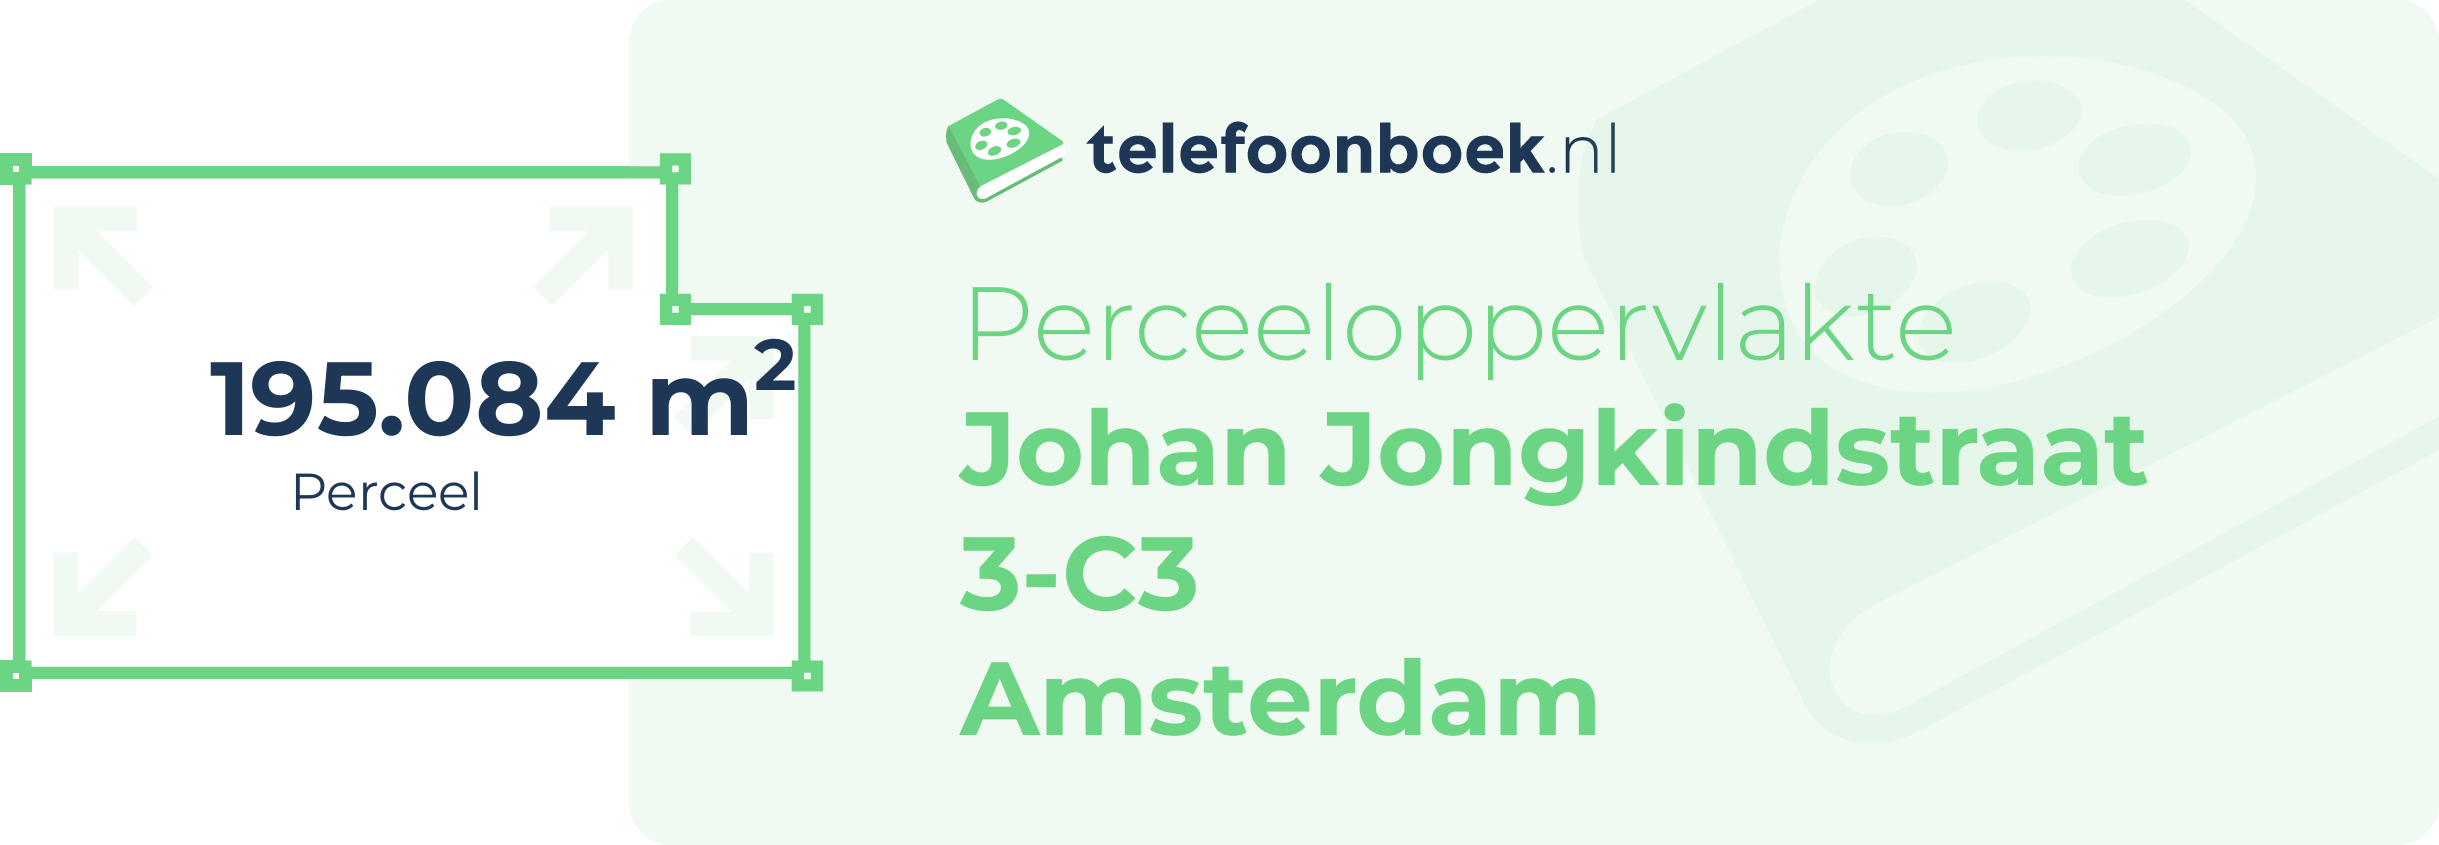 Perceeloppervlakte Johan Jongkindstraat 3-C3 Amsterdam